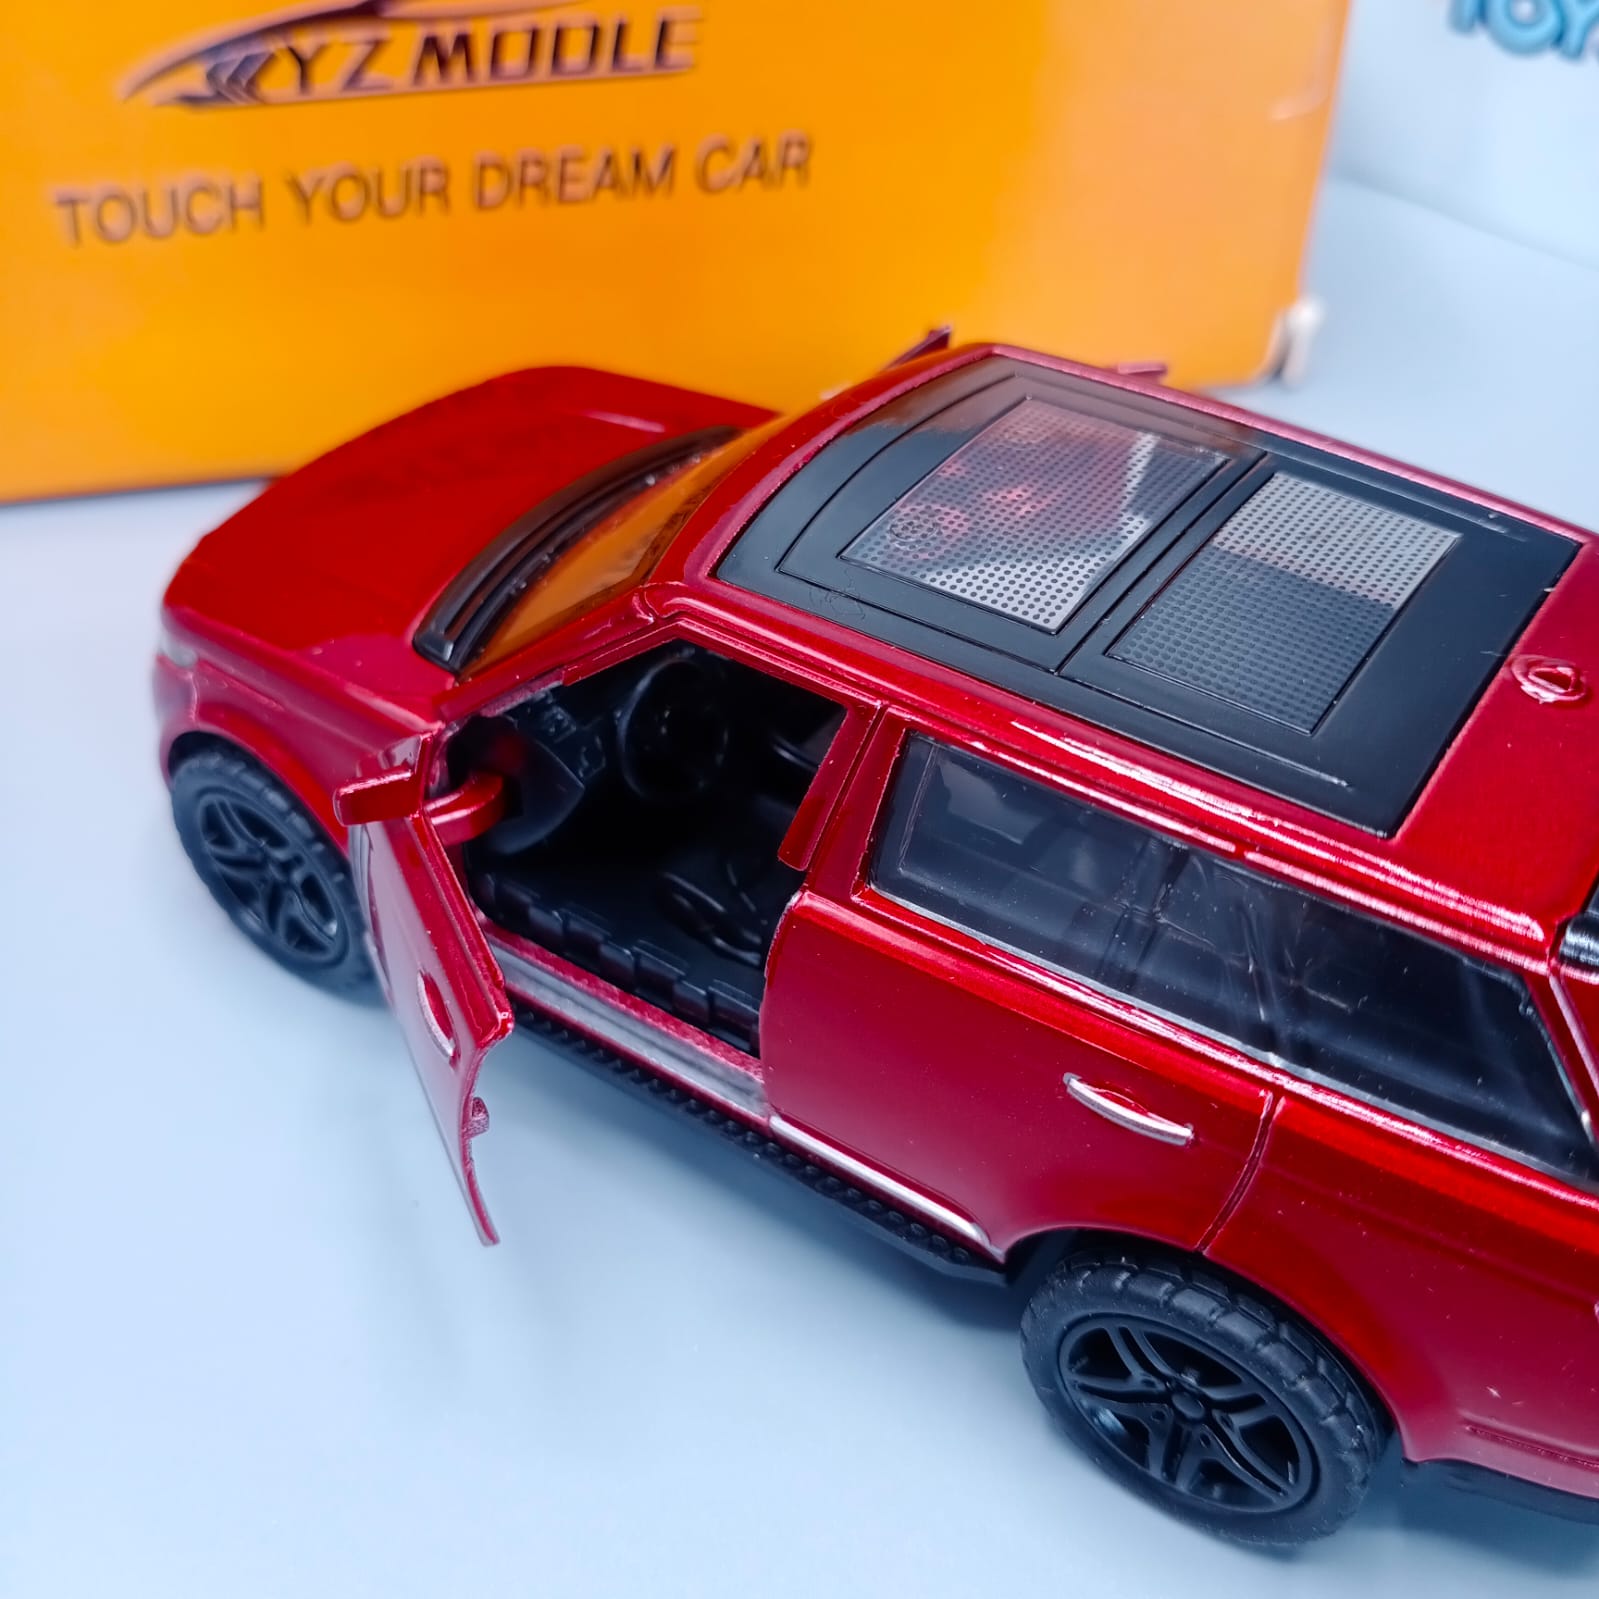 Die-Cast Range Rover Metal Car Toy